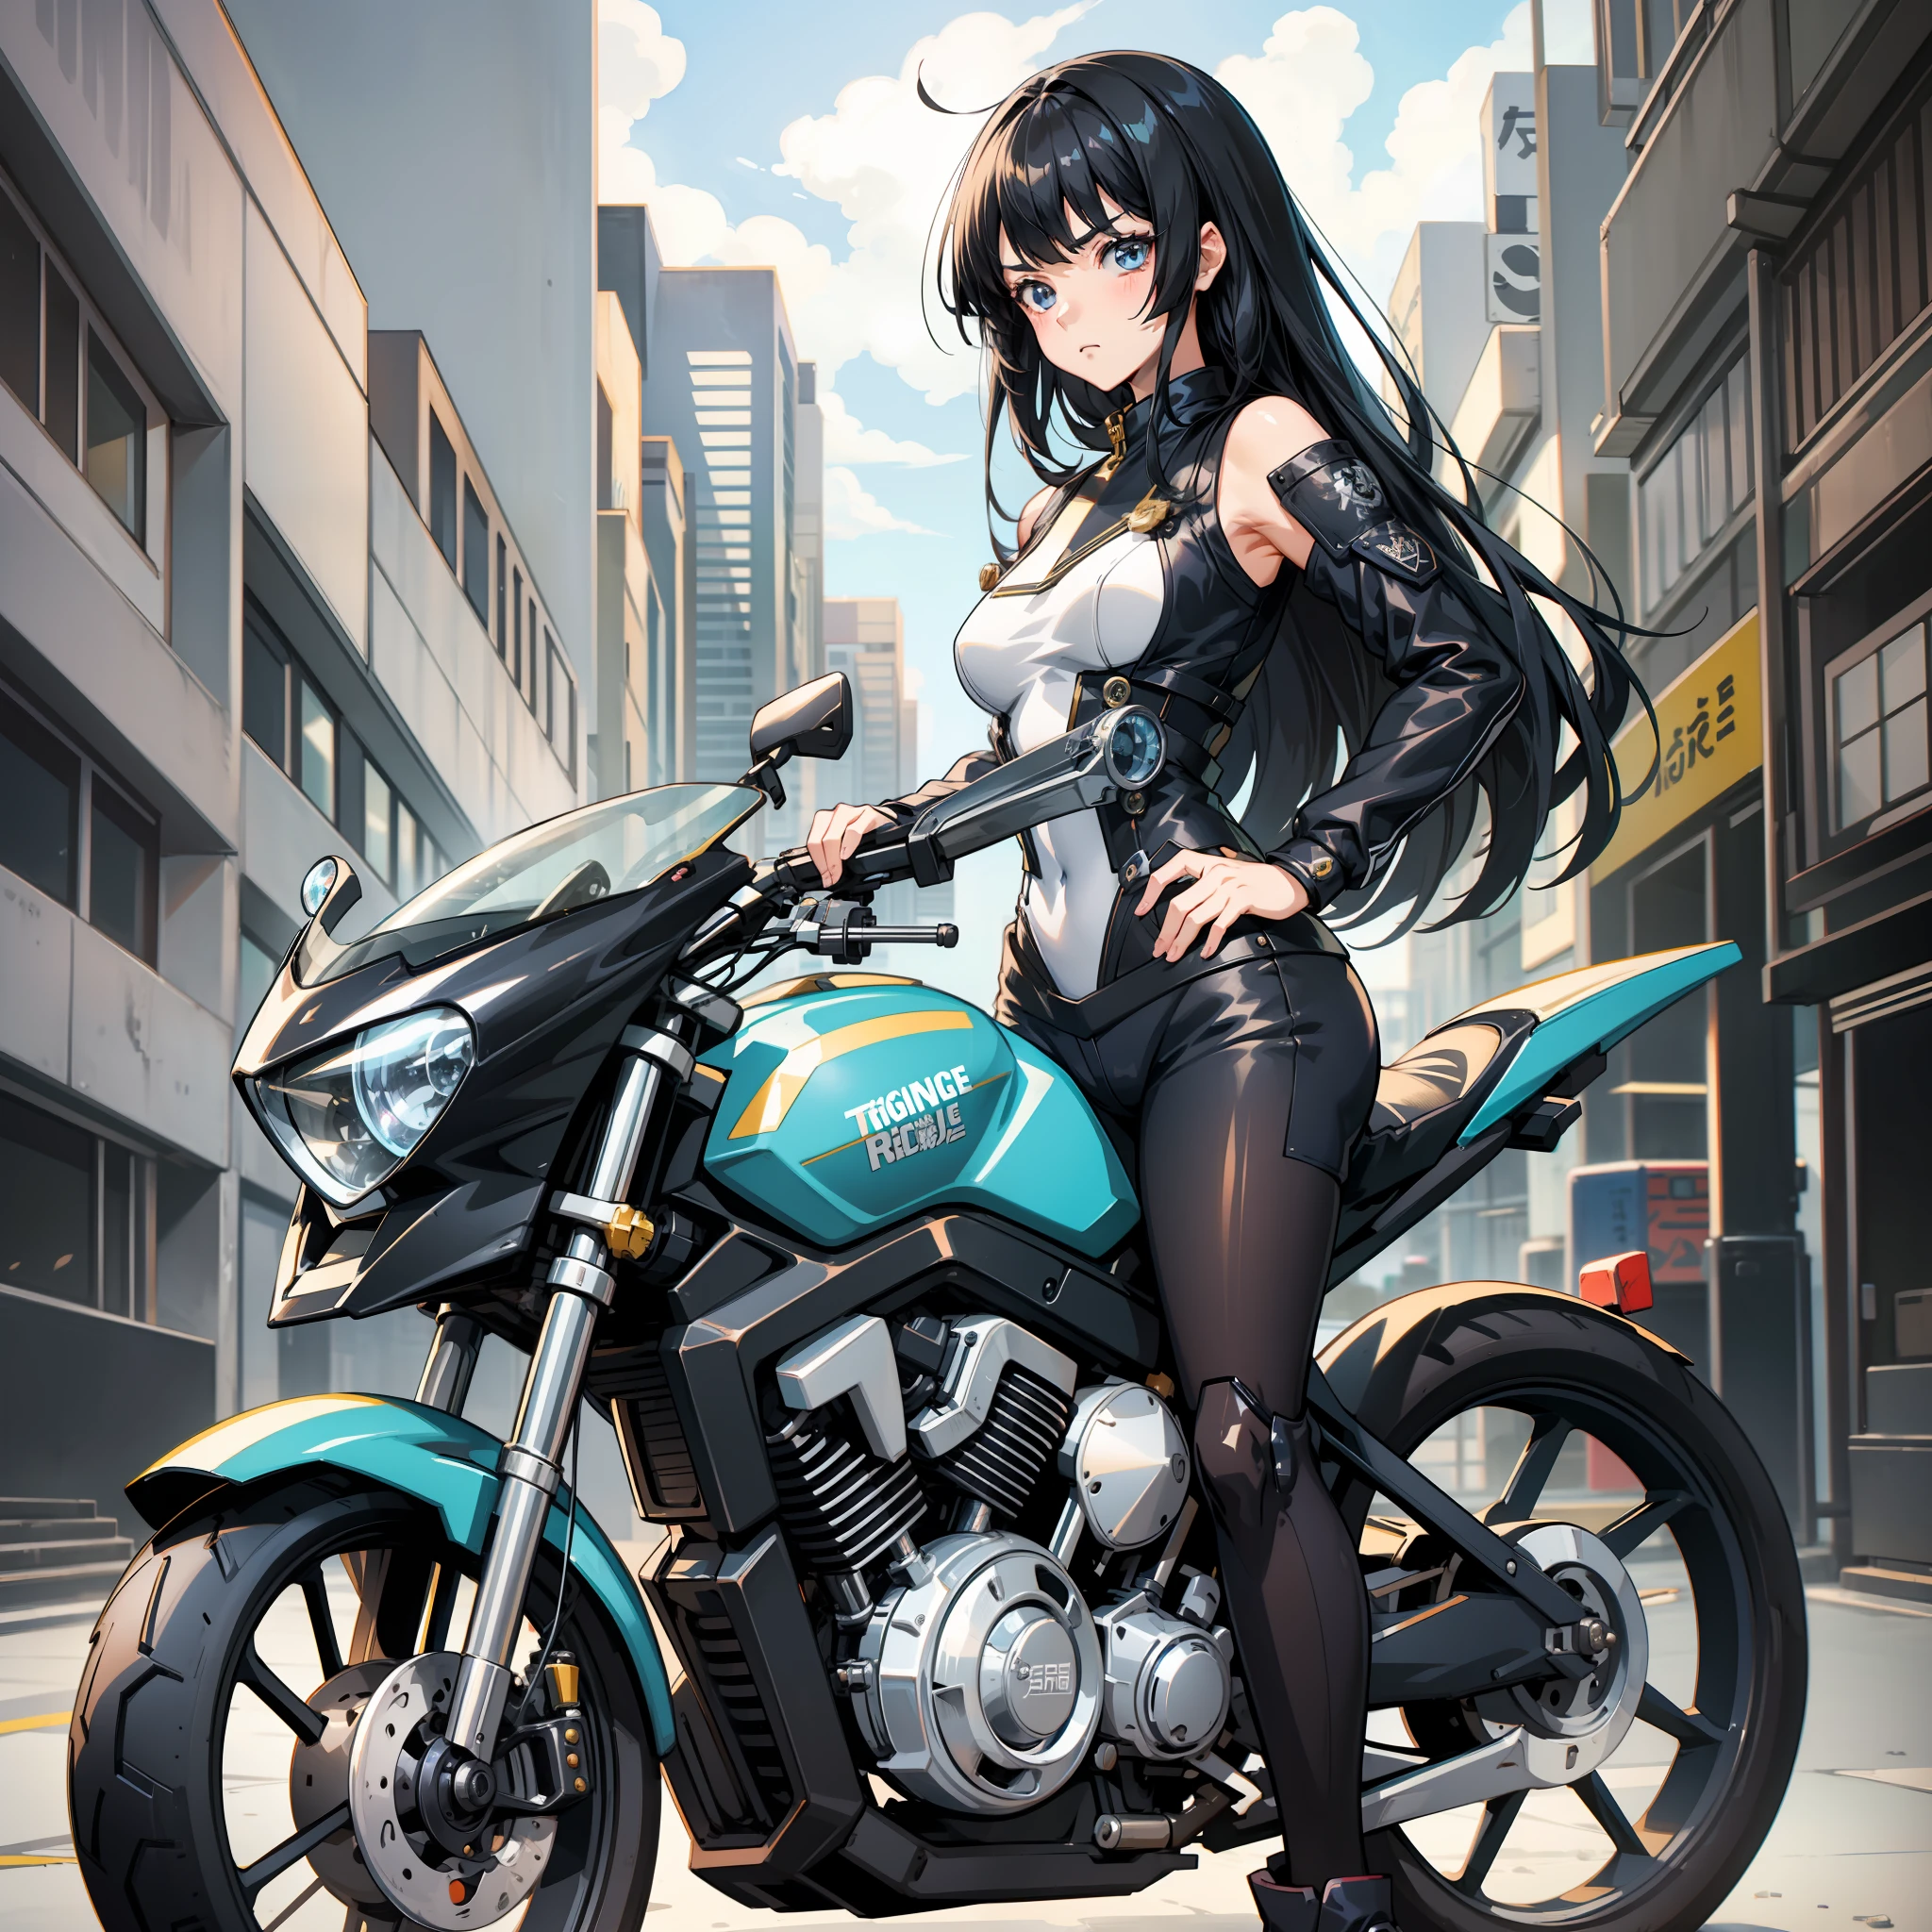 Девушка-аниме-персонаж в кайфе с черными волосами, челка, закрывающая брови, длинные волосы, короткие волосы, невыразительный, свернуть 3-й стиль, шикарный, холоднее, стиль японской анимационной студии, шедевр, девушка катается на мотоцикле, Художественный стиль Мо